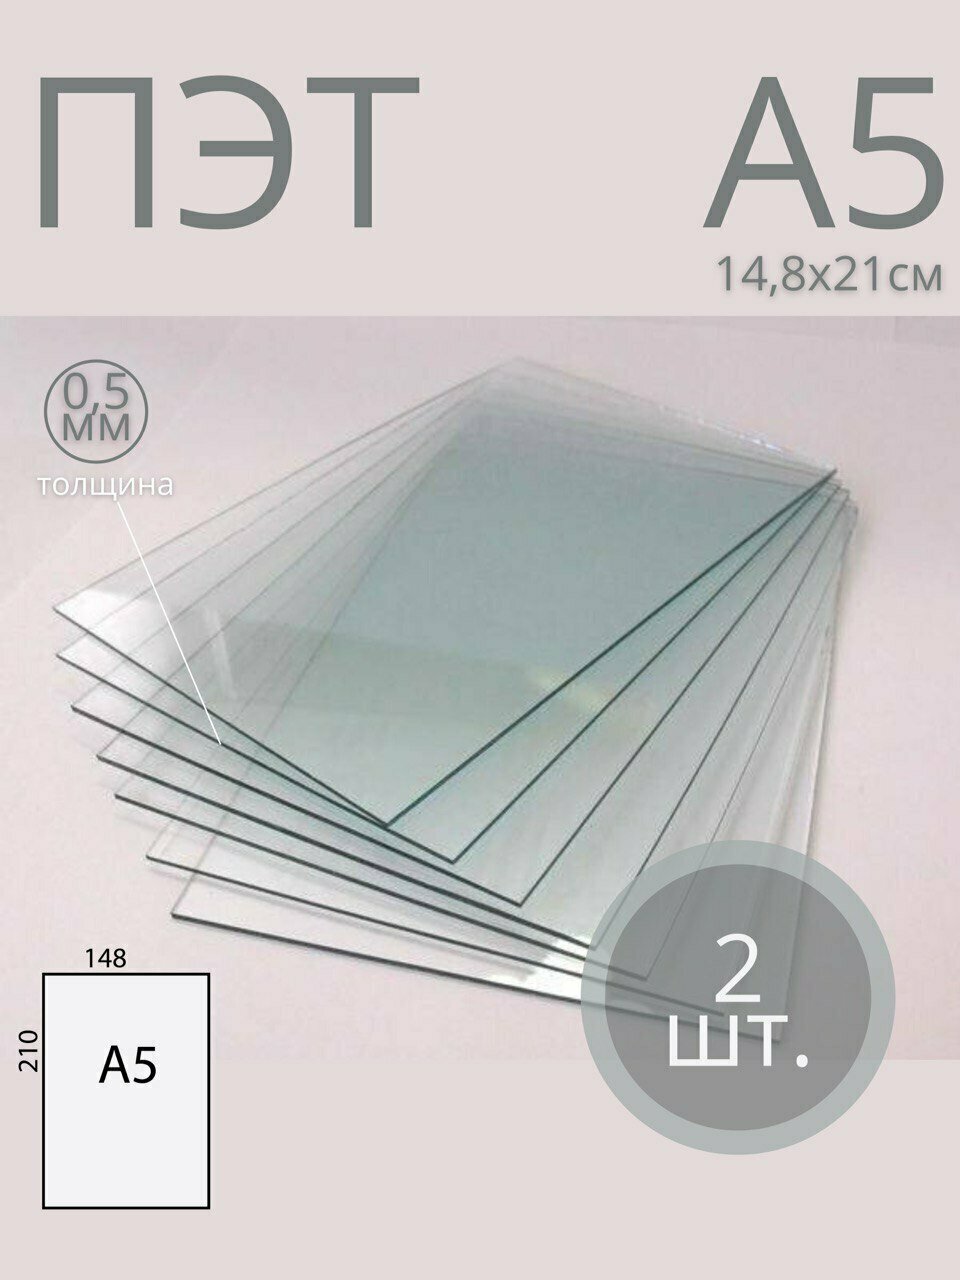 Пластик листовой прозрачный ПЭТ, формат А5 (21*14,8 см) толщина 0,5 мм (2 шт)